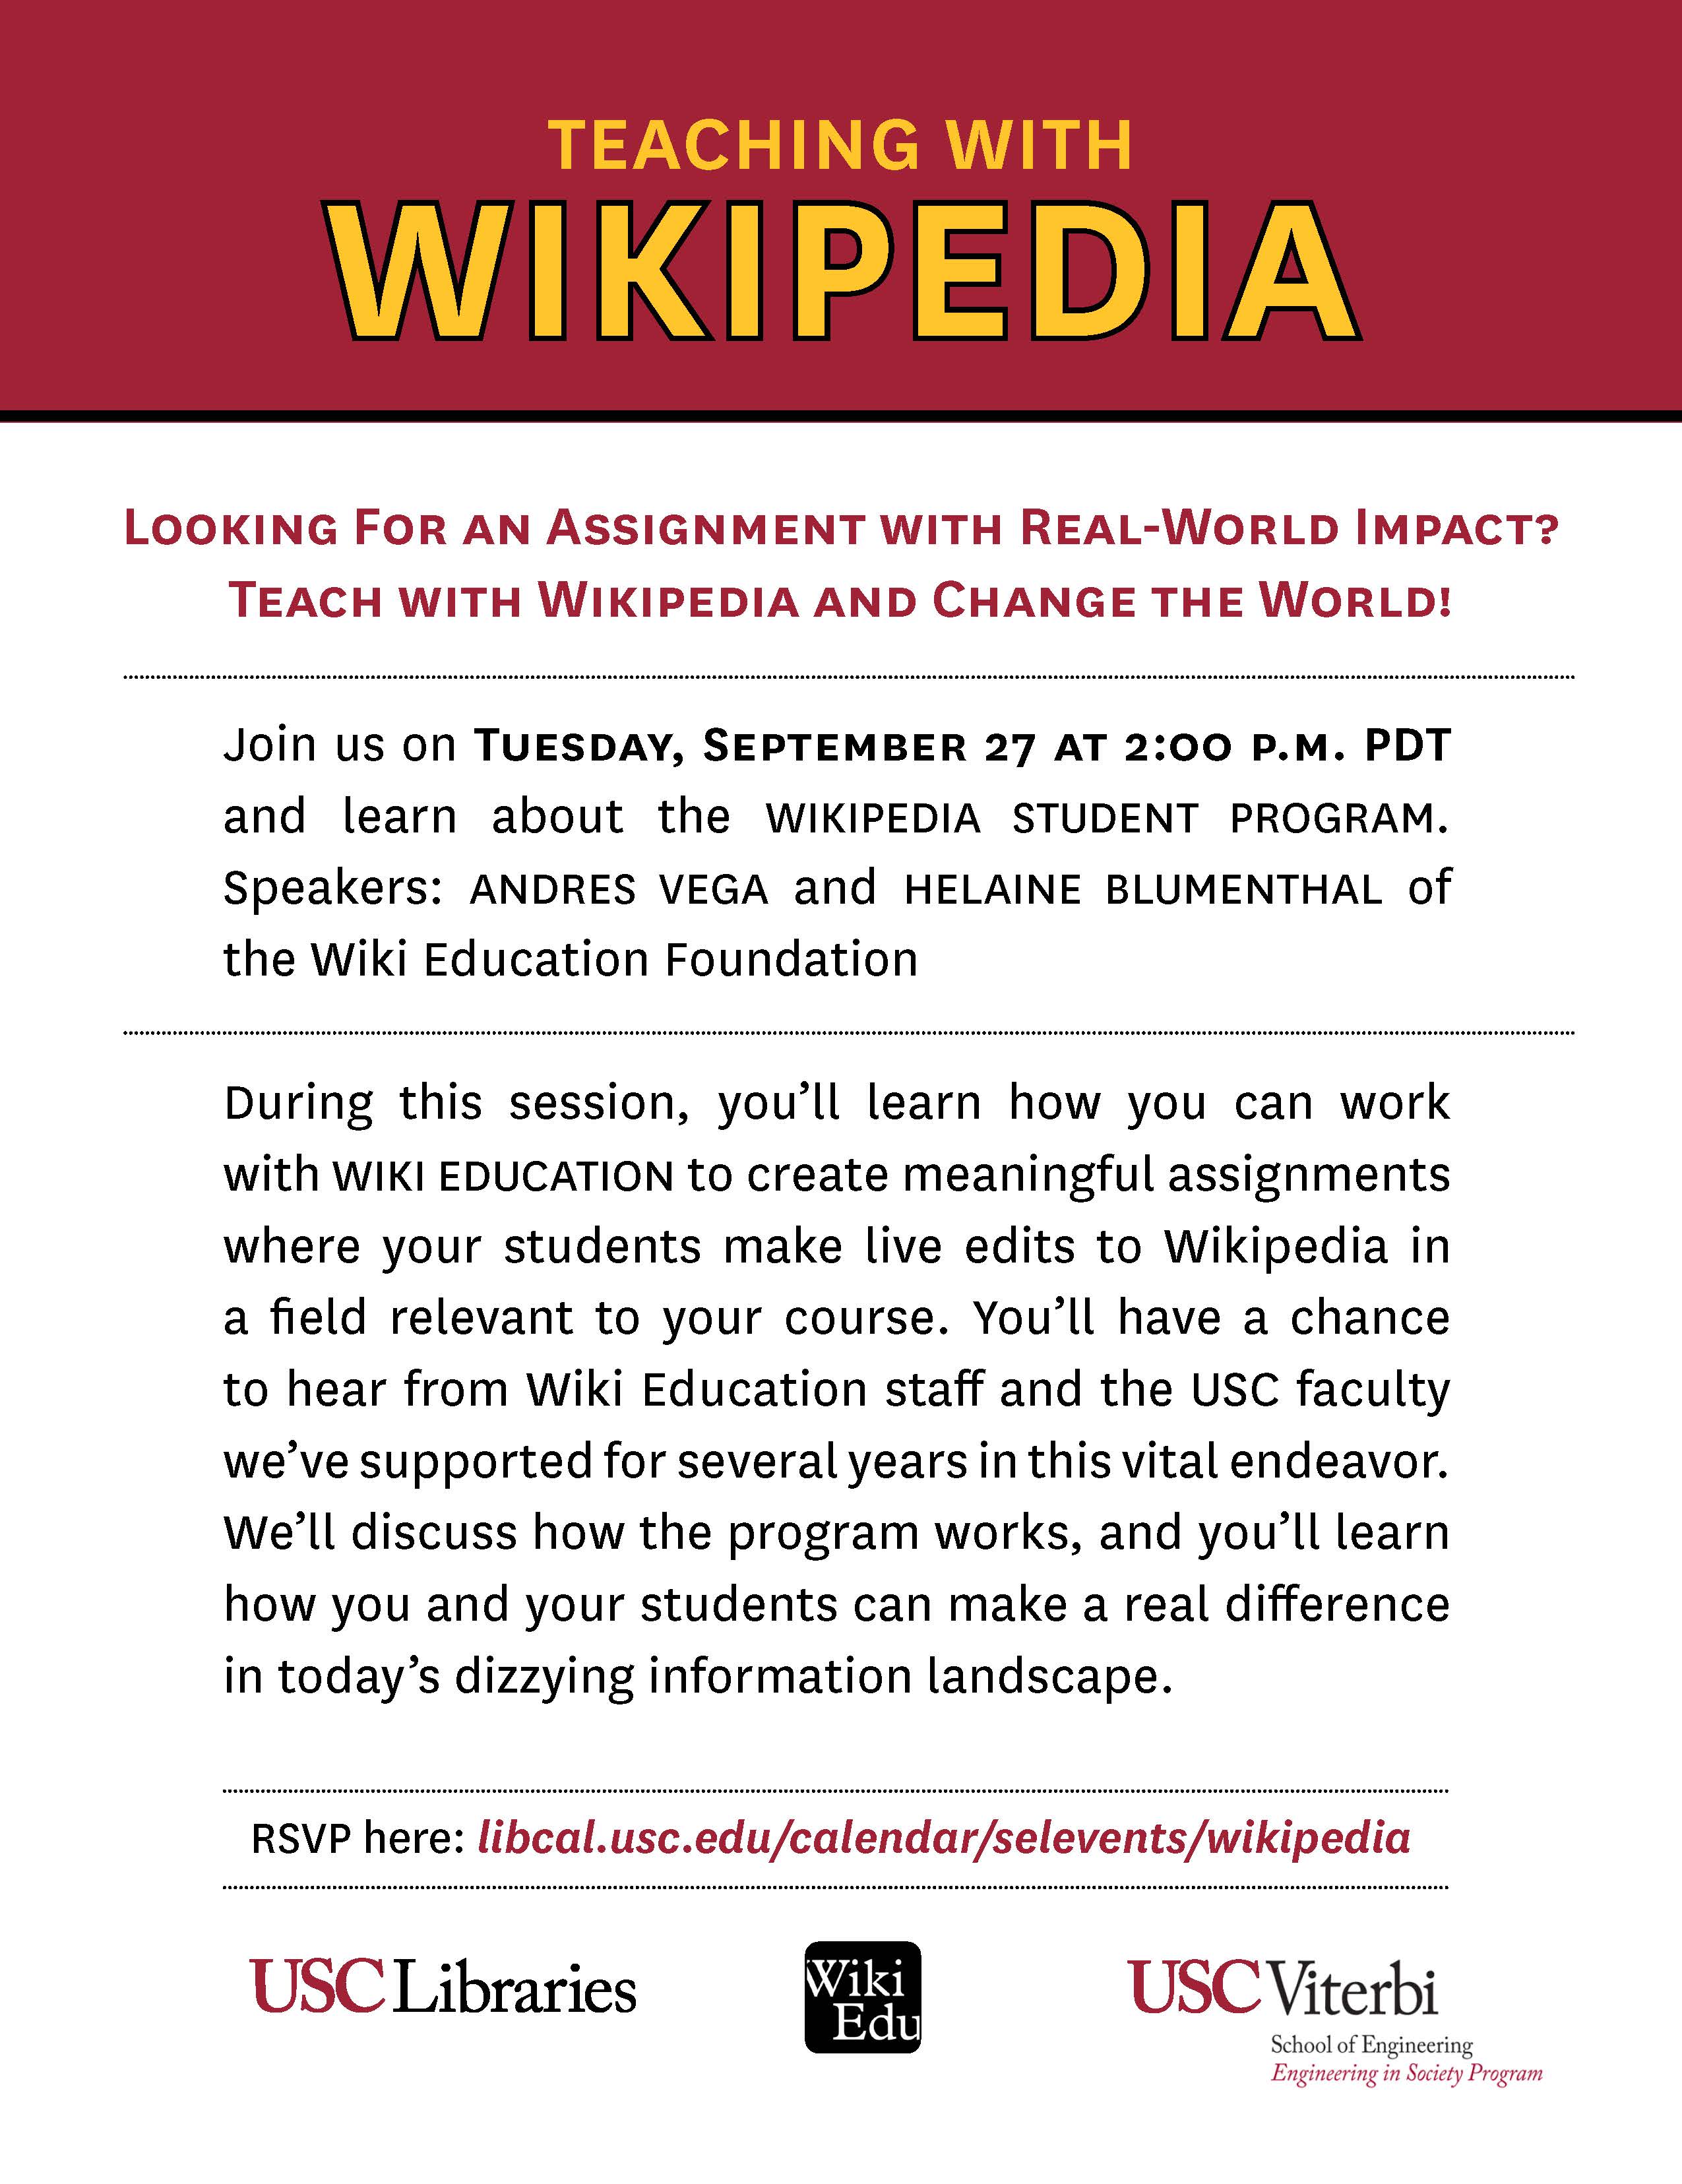 Teaching Wikipedia Workshop